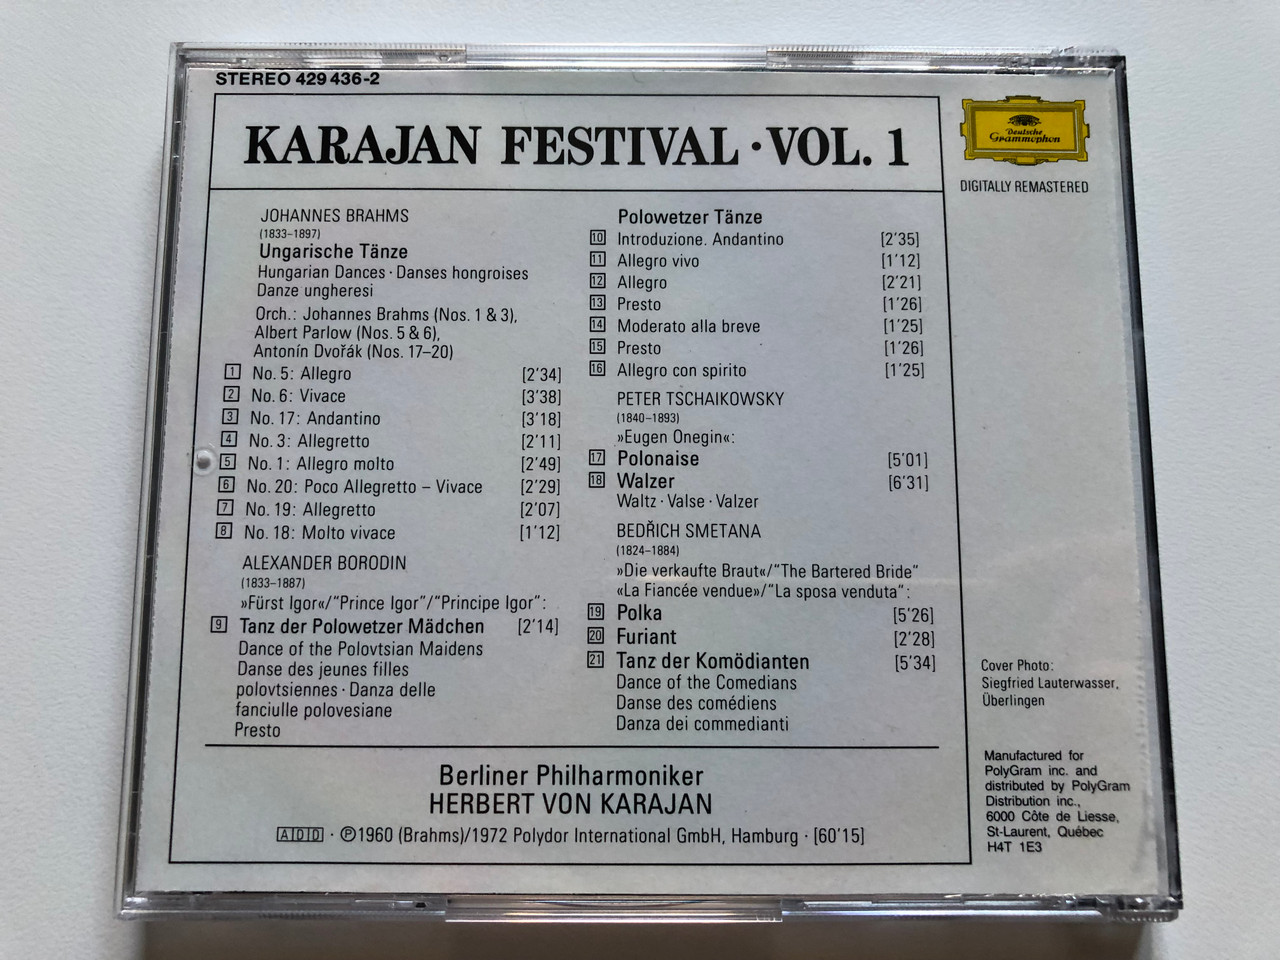 https://cdn10.bigcommerce.com/s-62bdpkt7pb/products/0/images/252686/Karajan_Festival_-_Vol._1_Deutsche_Grammophon_Audio_CD_Stereo_426_436-21_4__49909.1661789024.1280.1280.JPG?c=2&_gl=1*jxxi7d*_ga*MjA2NTIxMjE2MC4xNTkwNTEyNTMy*_ga_WS2VZYPC6G*MTY2MTc4MjI5Ny41NDEuMS4xNjYxNzg4Nzk0LjI2LjAuMA..